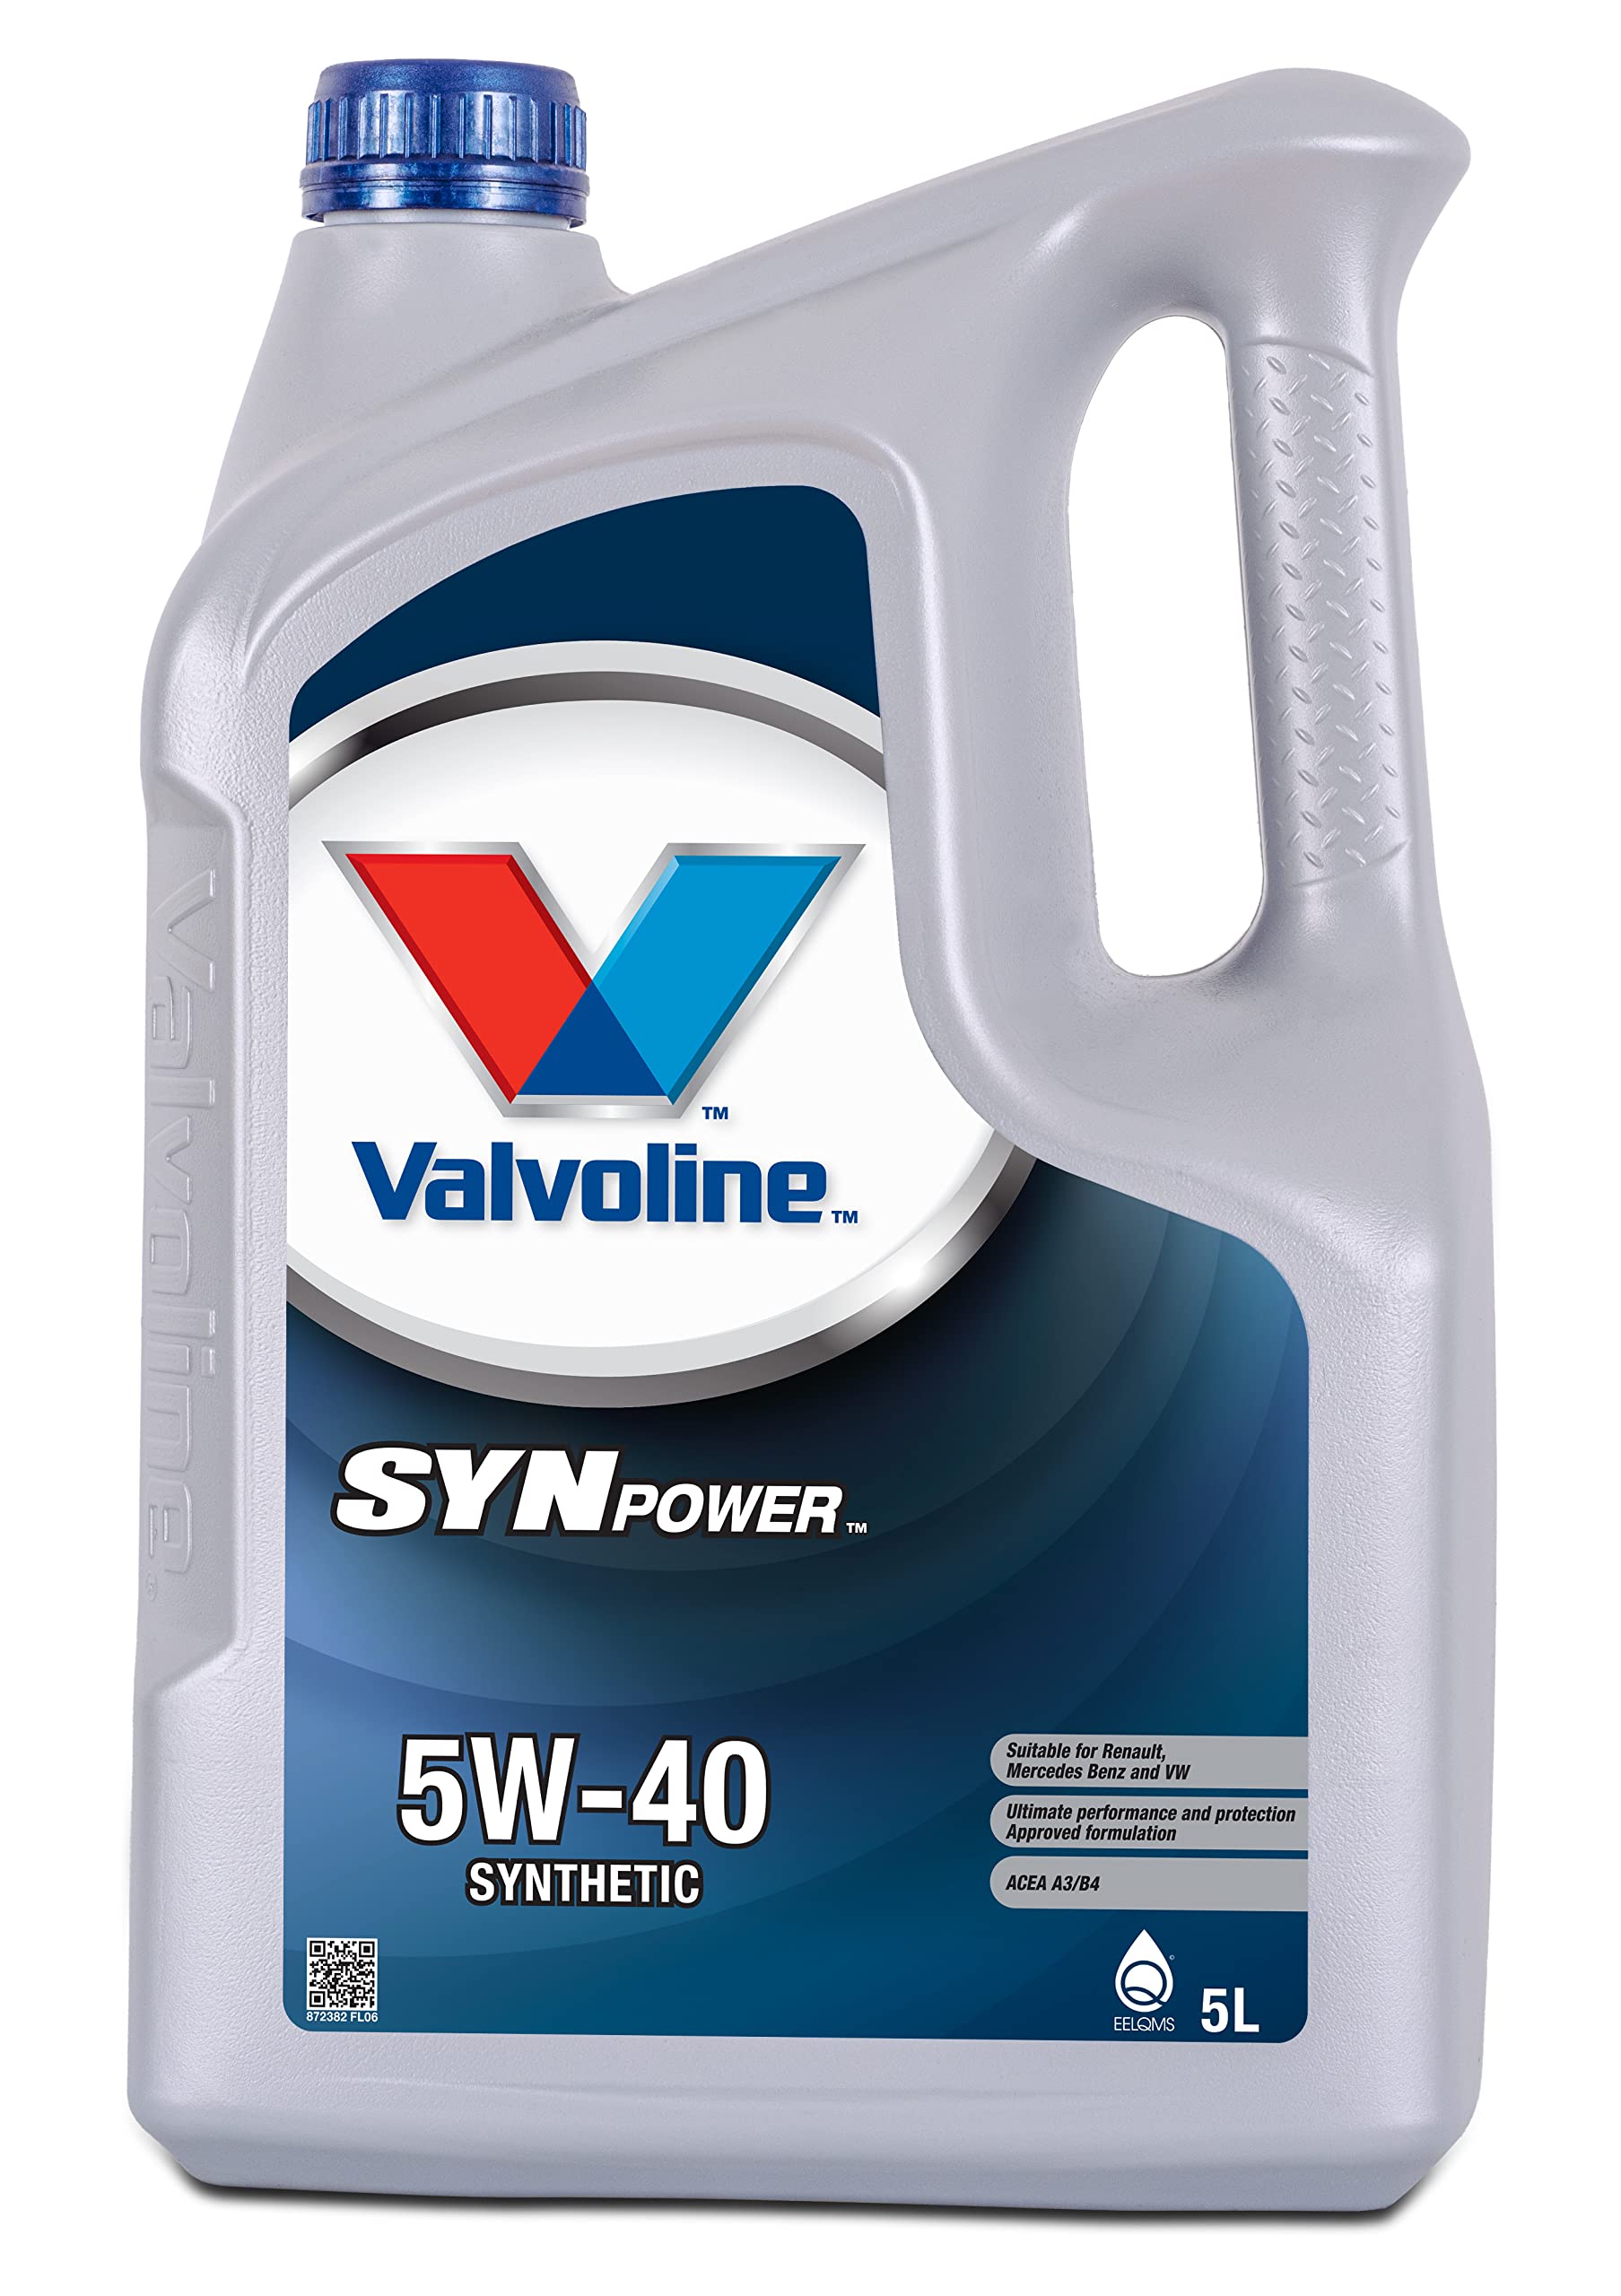 Valvoline SynPower 5W-40, 5L von Valvoline